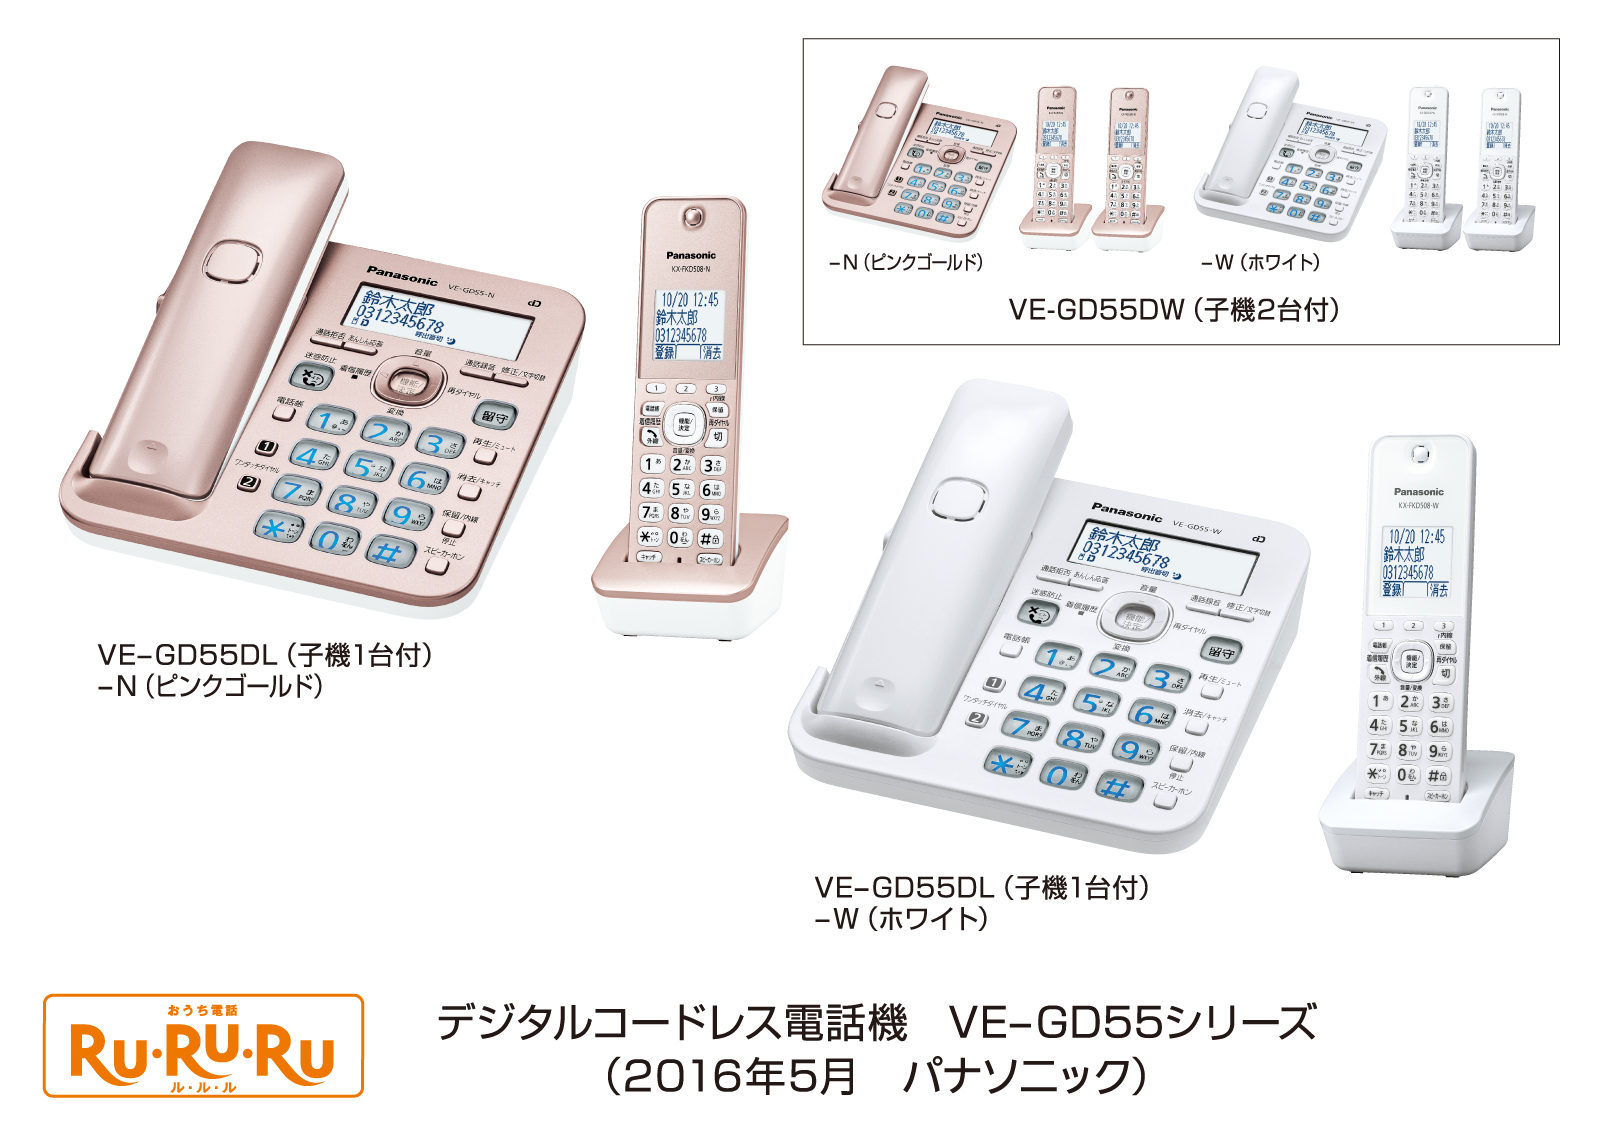 デジタルコードレス電話機「RU・RU・RU」 VE-GD55シリーズを発売